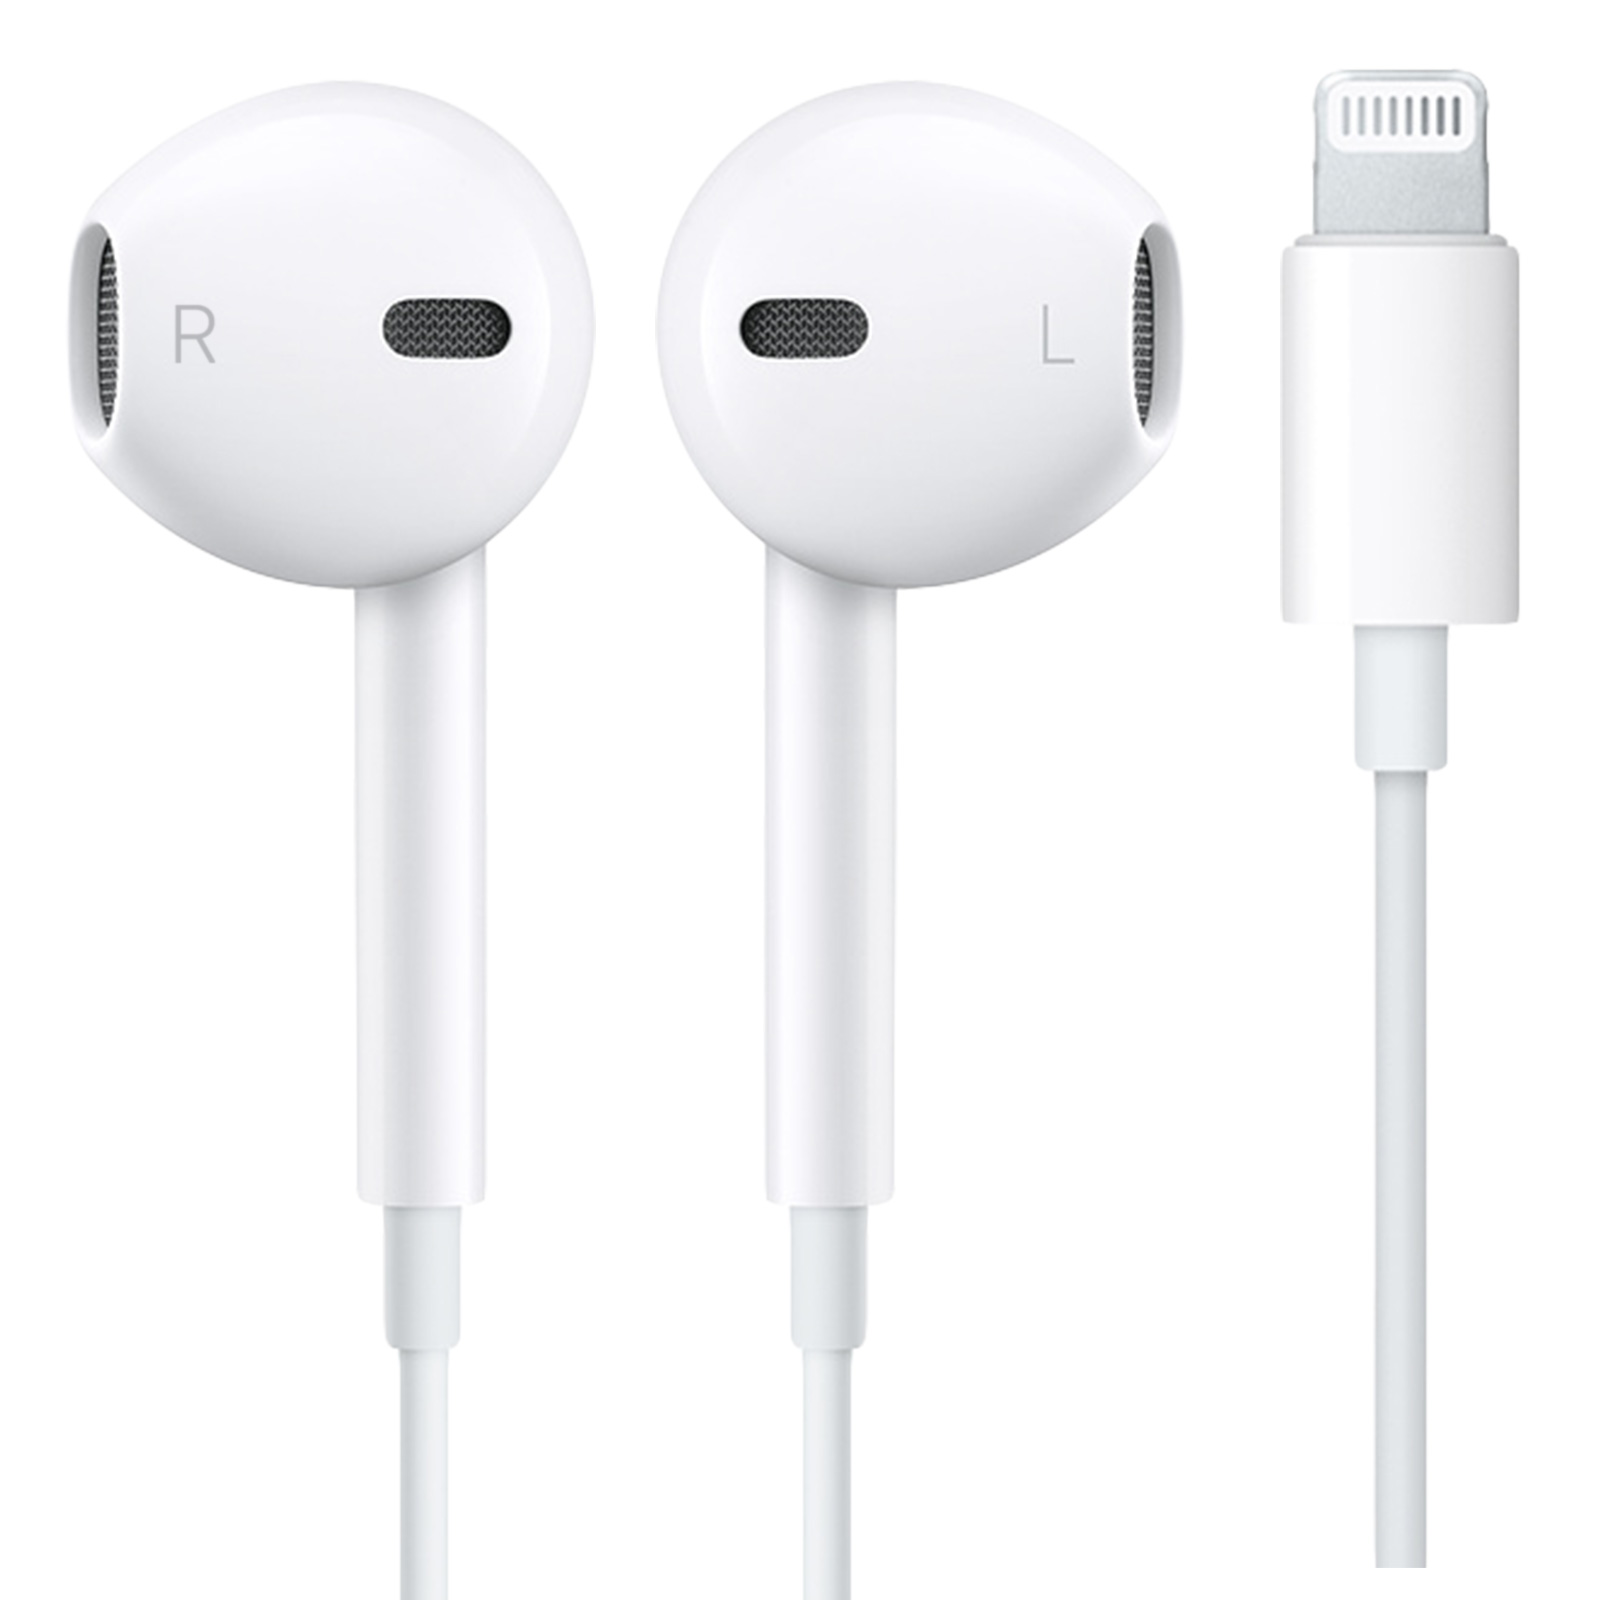 Écouteurs EarPods Apple original connecteur Lightning - Blanc